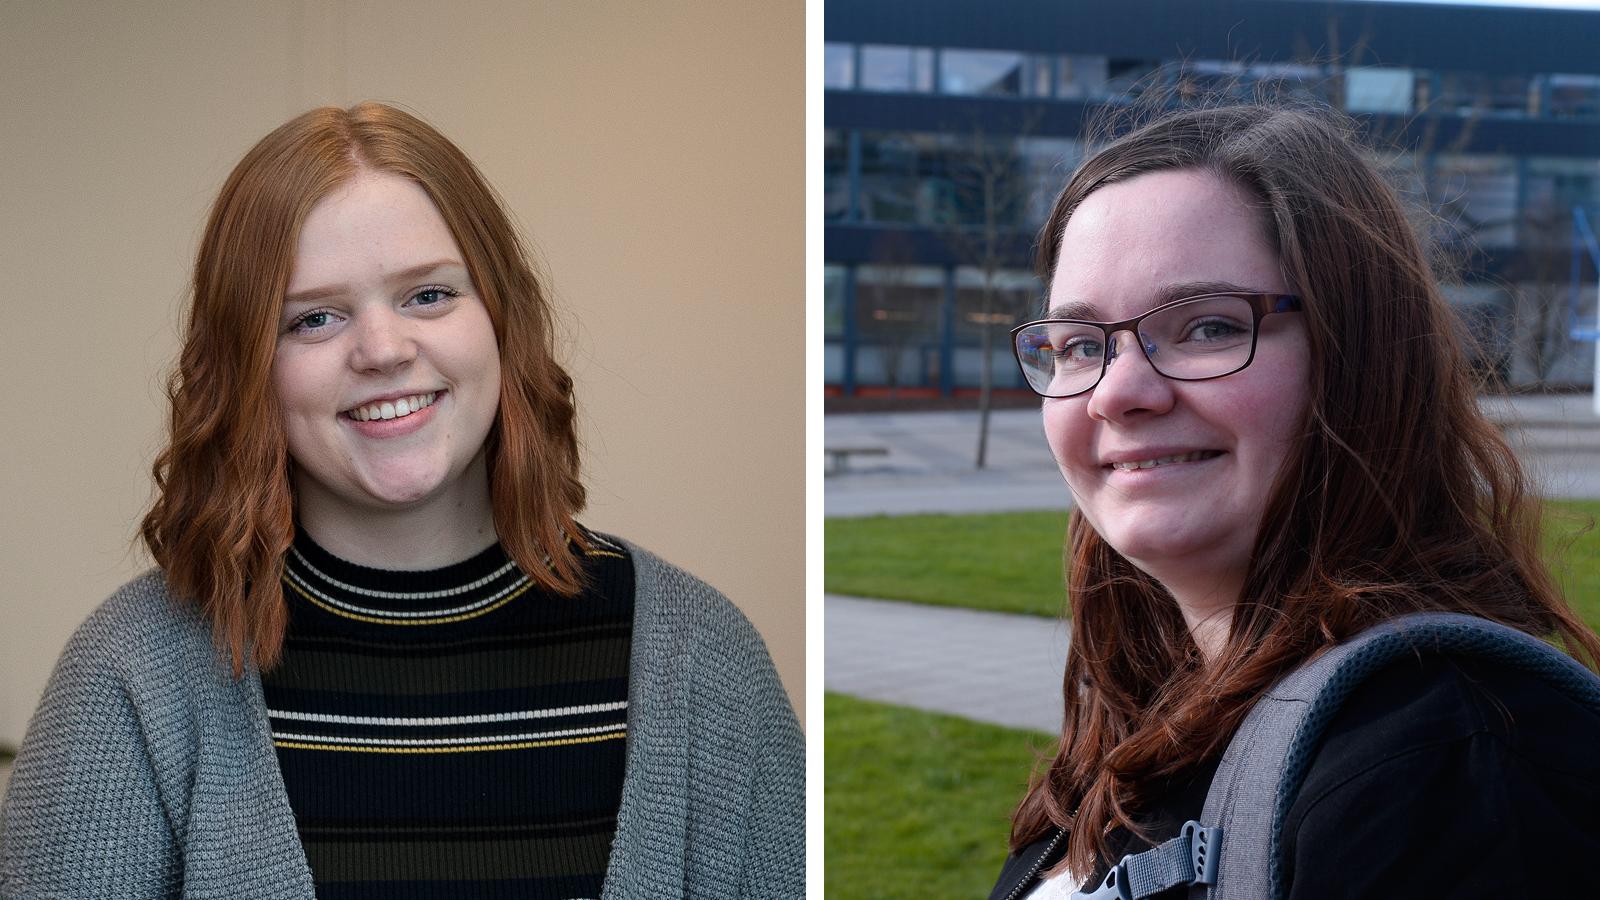  Studentene Ingunn Marie Korsgård Hagen og Lise Landøy er begge nødt til å ty til kredittkort.   